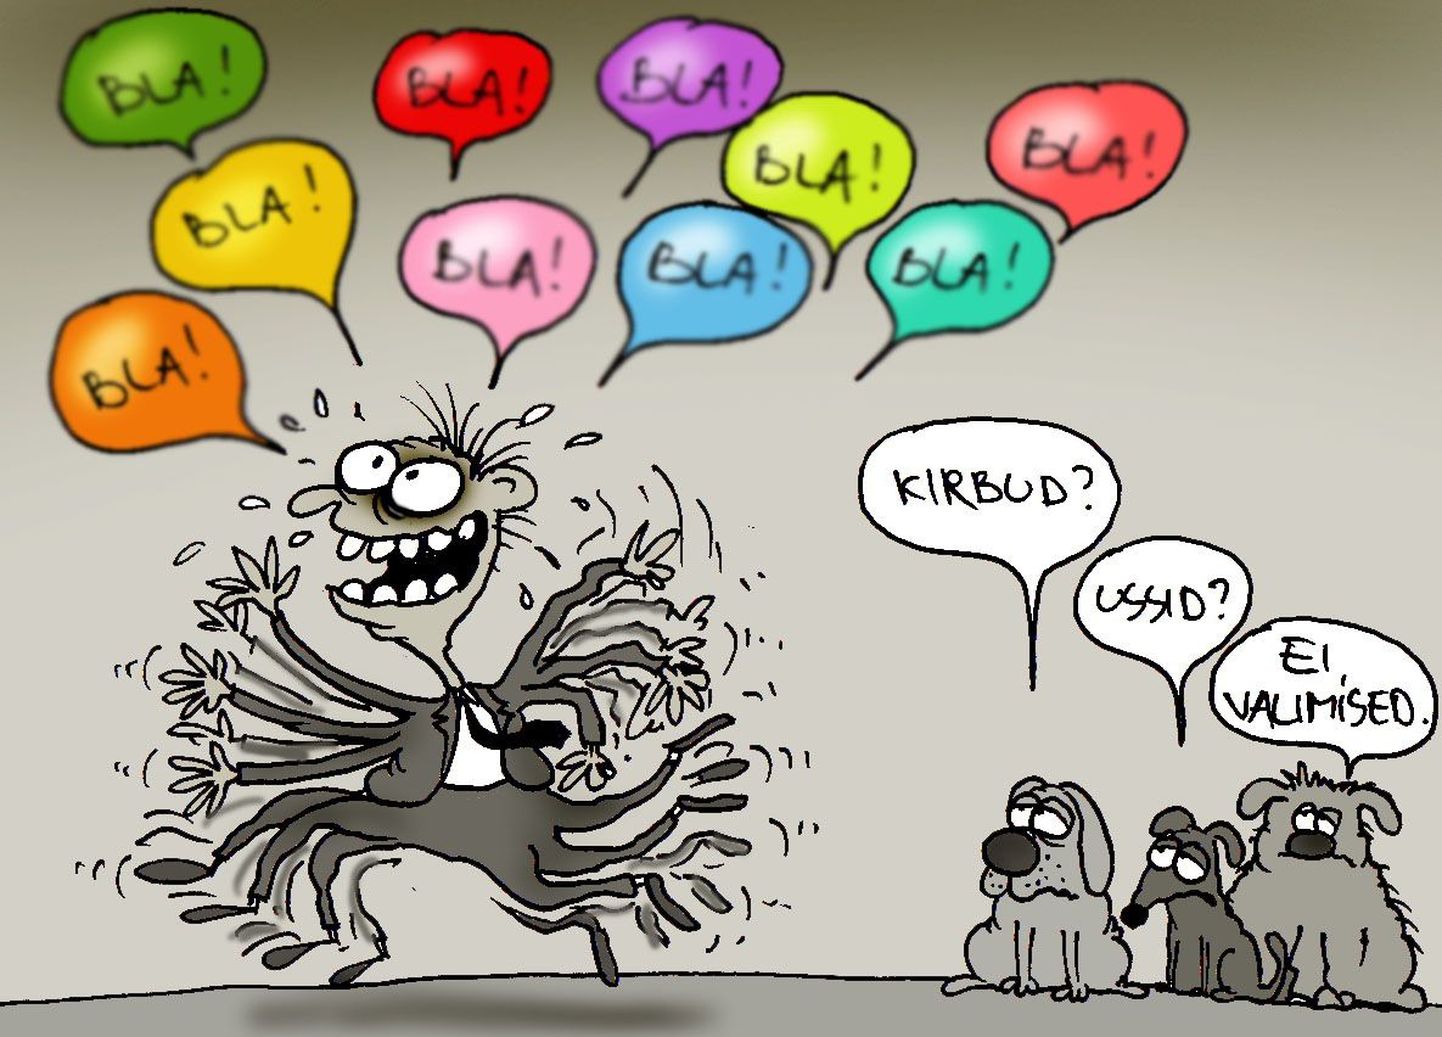 Карикатура Postimees на тему предвыборных обещаний. "Блохи? Глисты? Нет, выборы".